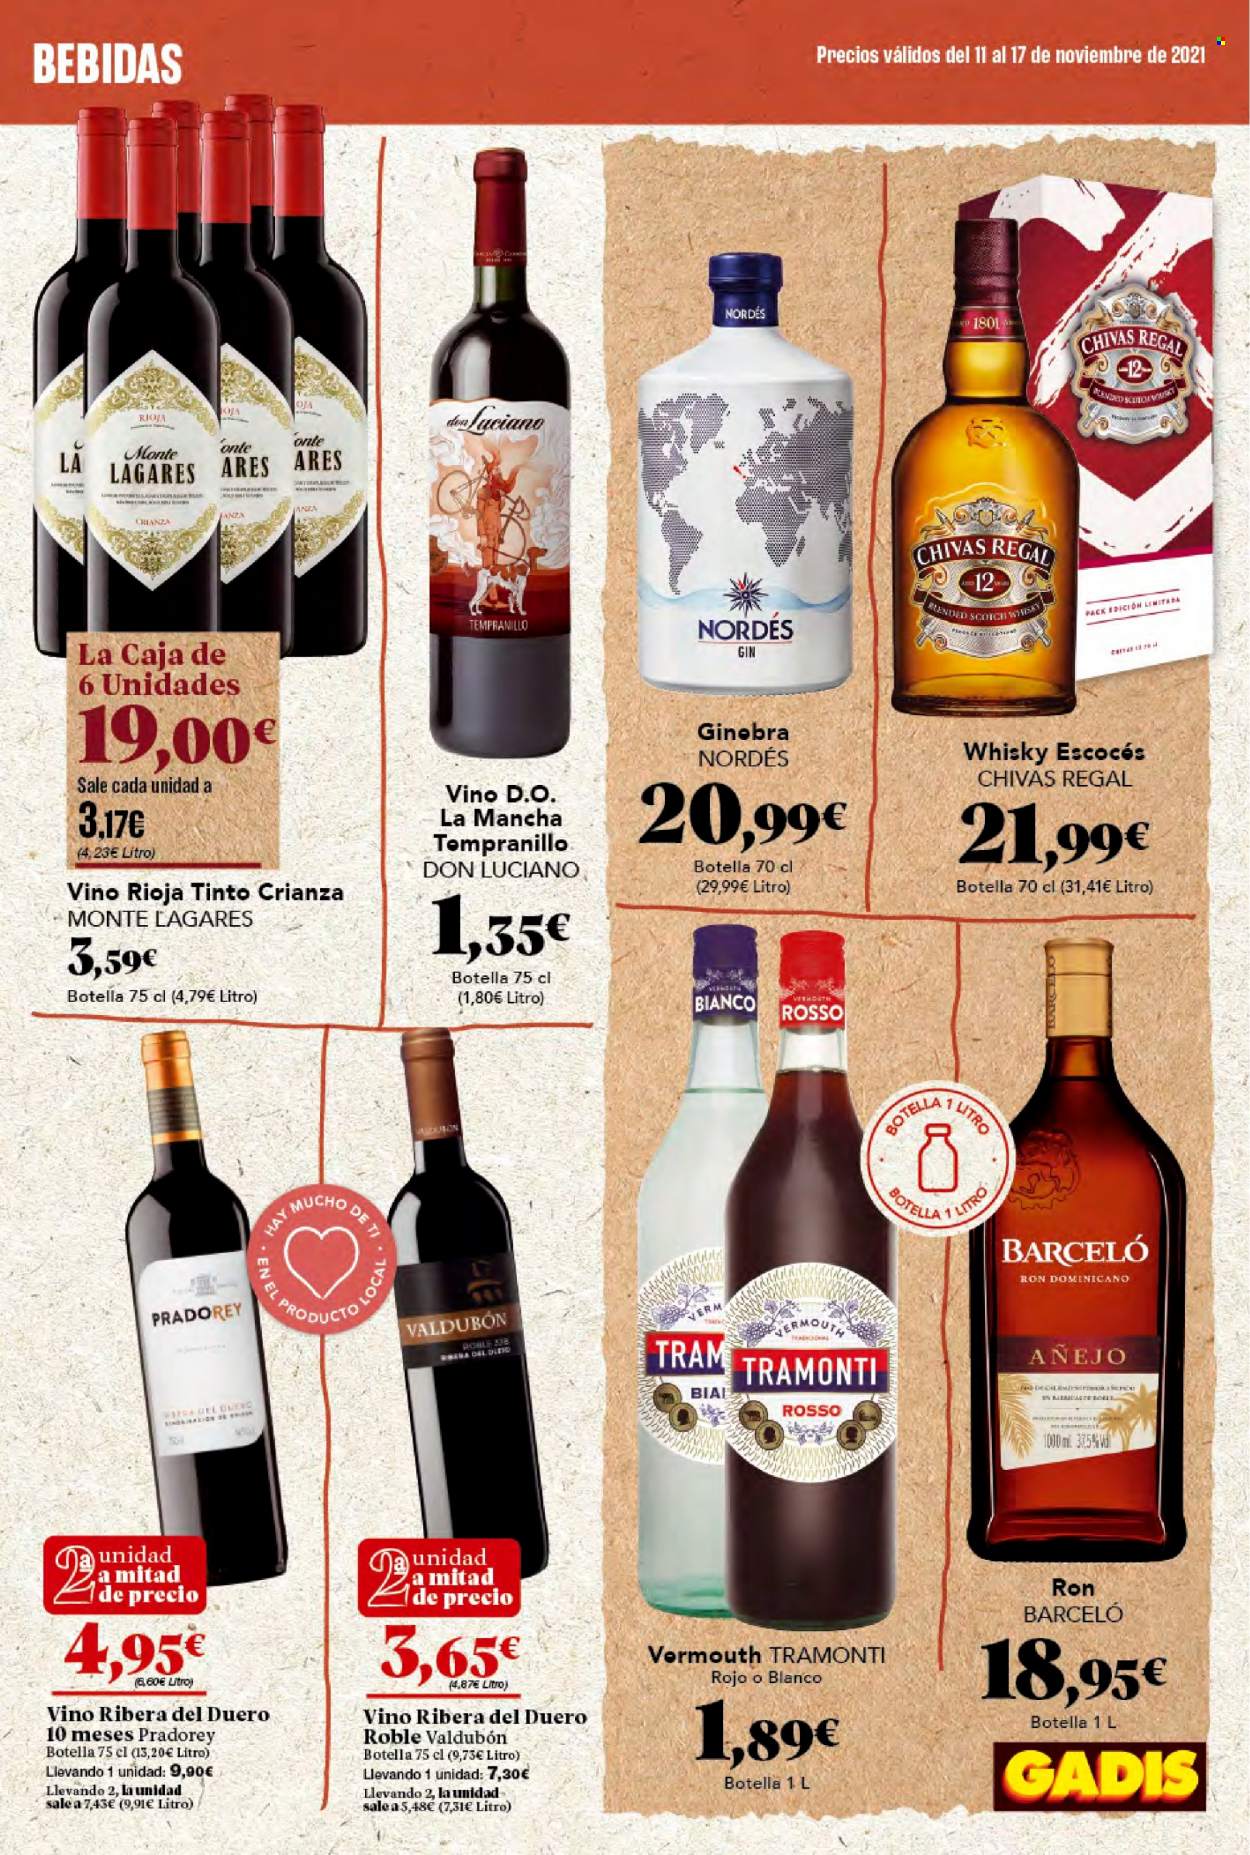 thumbnail - Folleto actual Gadis - 11/11/21 - 17/11/21 - Ventas - bebida, vino, Ribera del Duero, Rioja, Crianza, ron, Barceló, gin, whisky. Página 29.